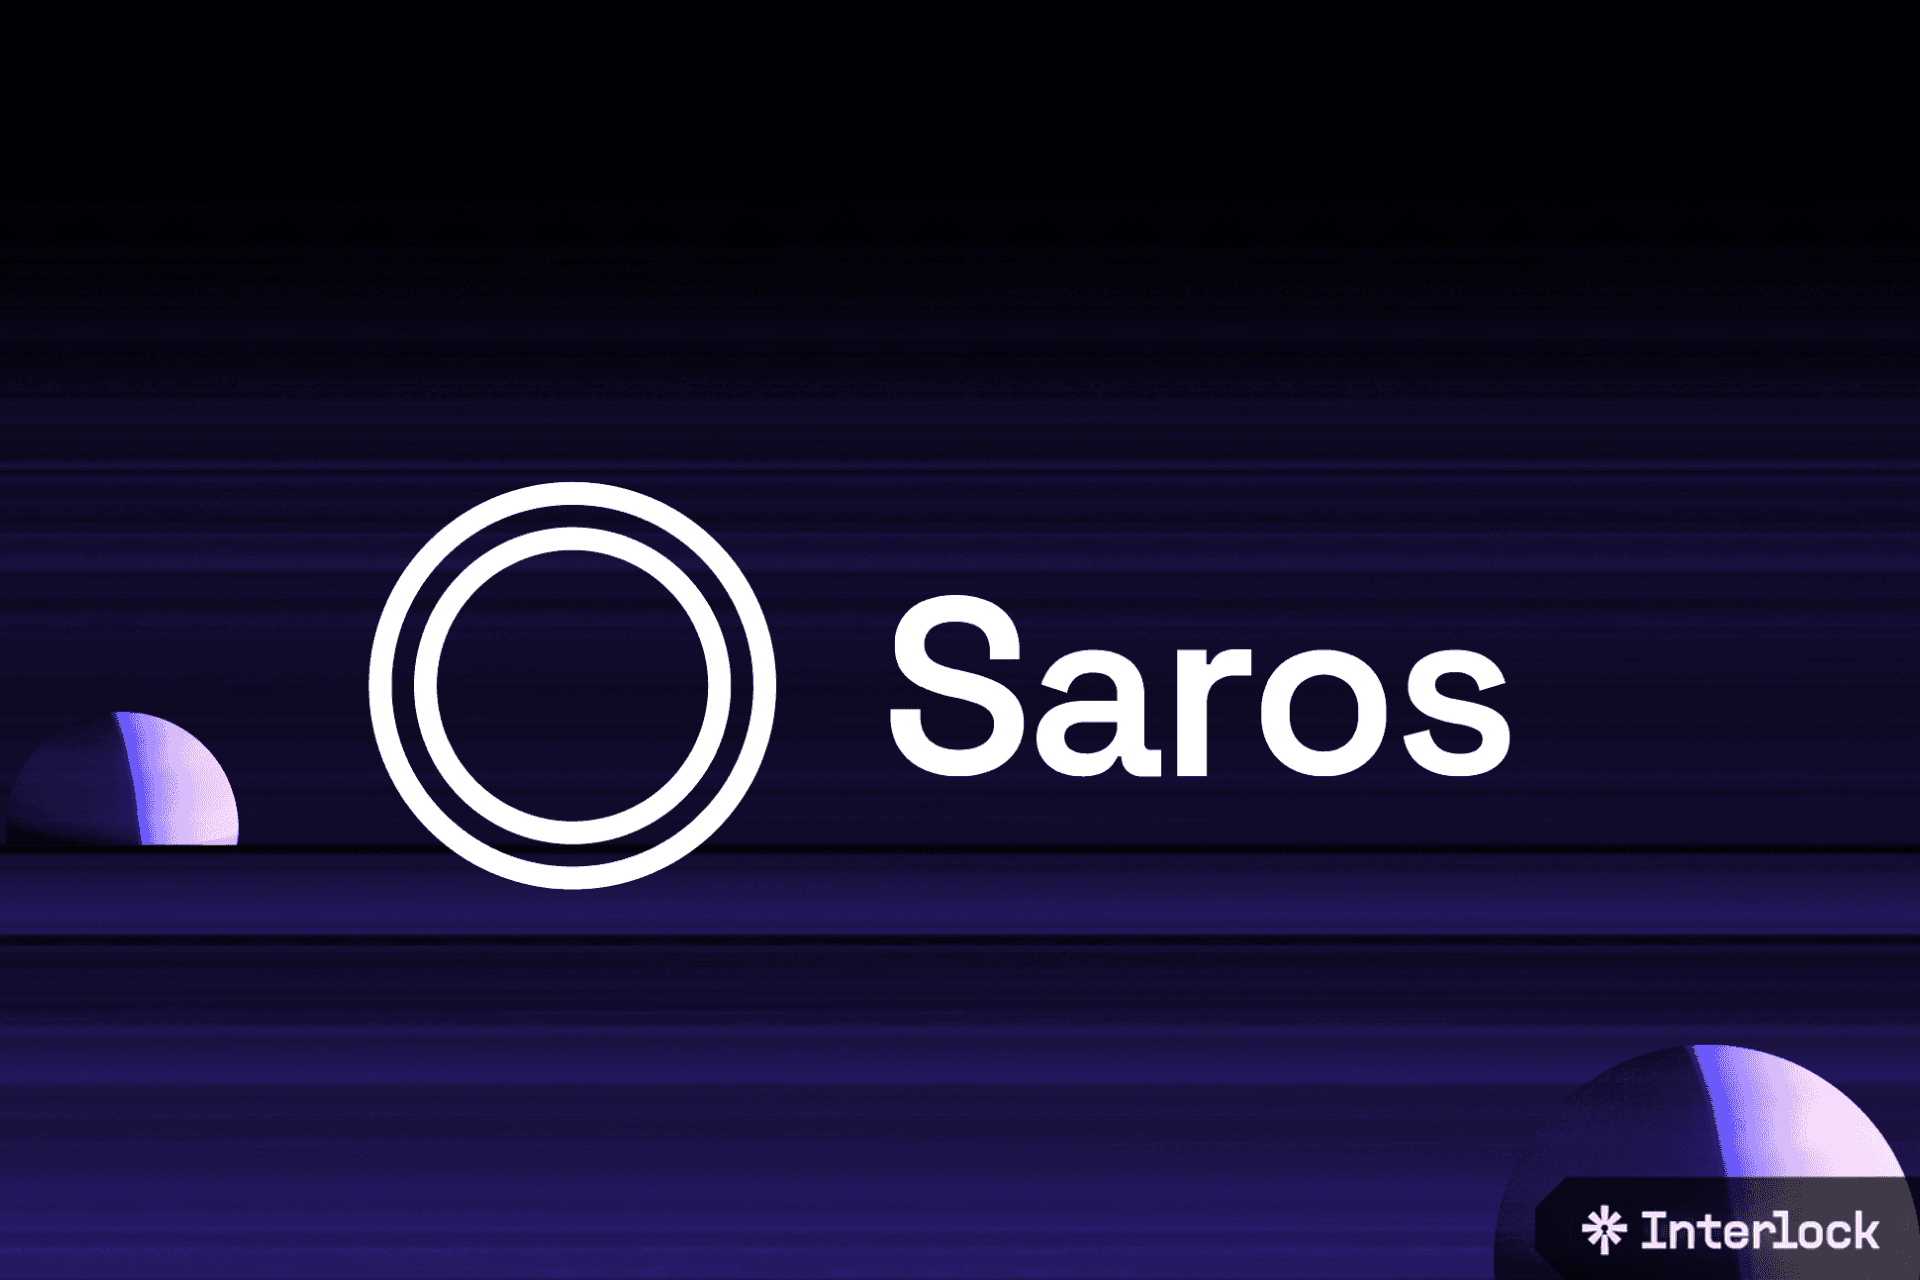 SAROS tăng 50 lần sau khi được niêm yết trên hàng loạt sàn giao dịch